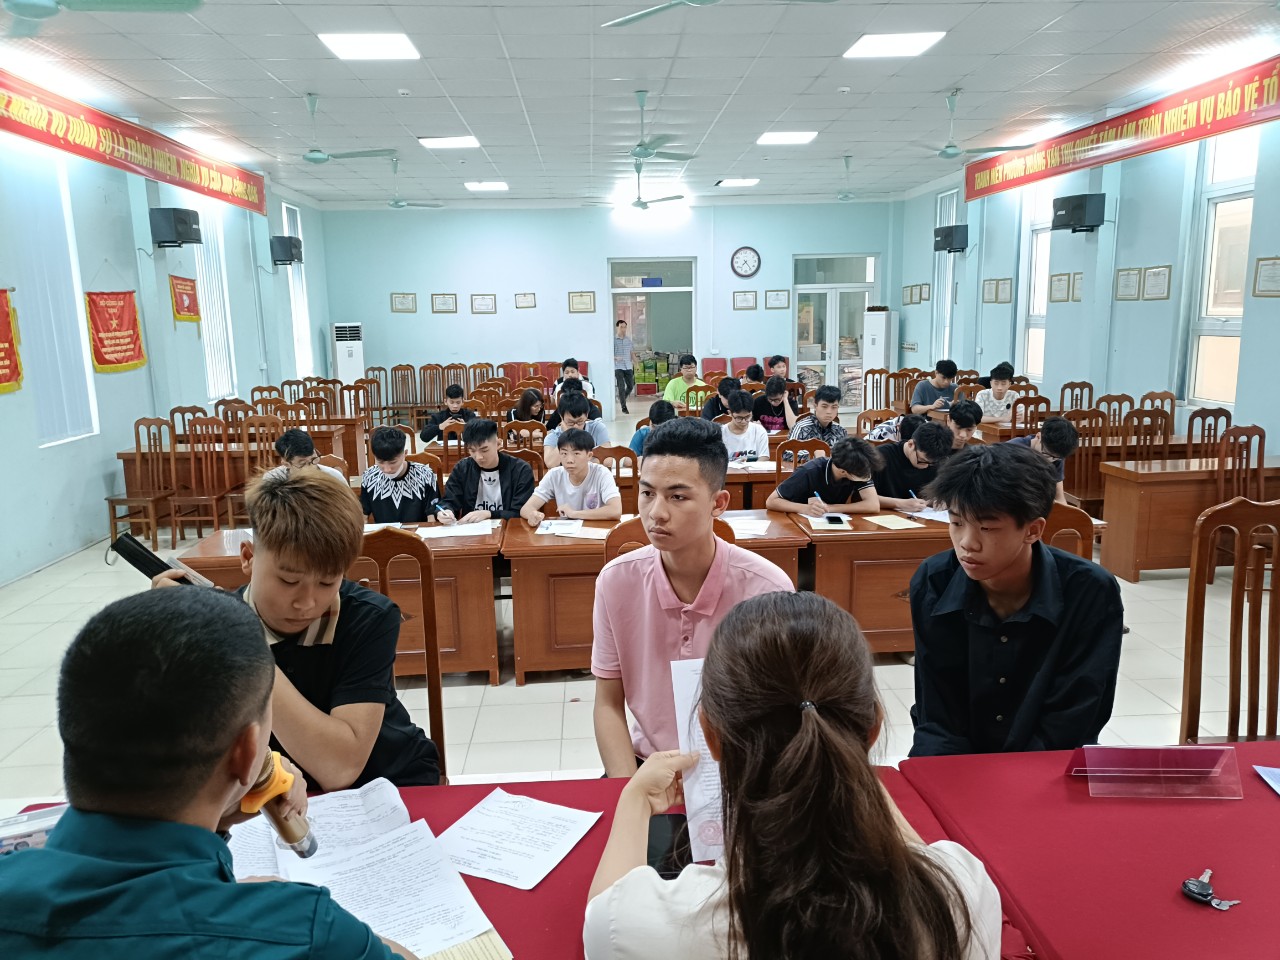 UBND phường Hoàng Văn Thụ: Tổ chức Đăng ký NVQS cho công dân 17 tuổi trên địa bàn